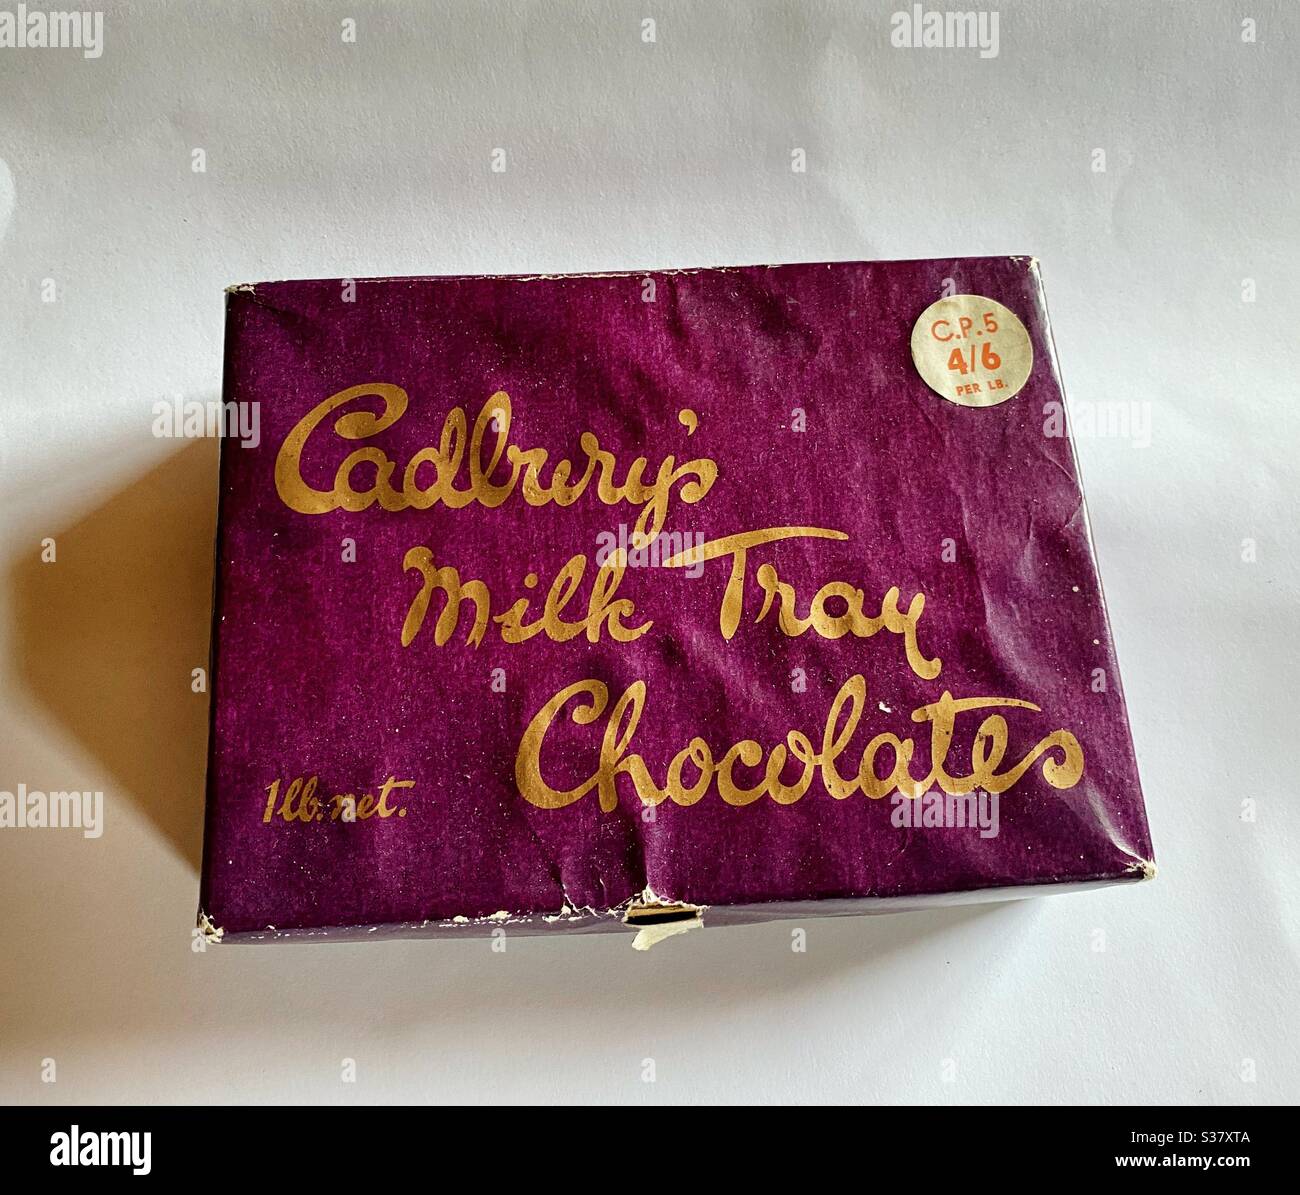 Una vieja caja de chocolate de bandeja de leche de Cadbury en una caja de 1 libra y se vendió originalmente para 4 chelines y 6 peniques. Foto de stock